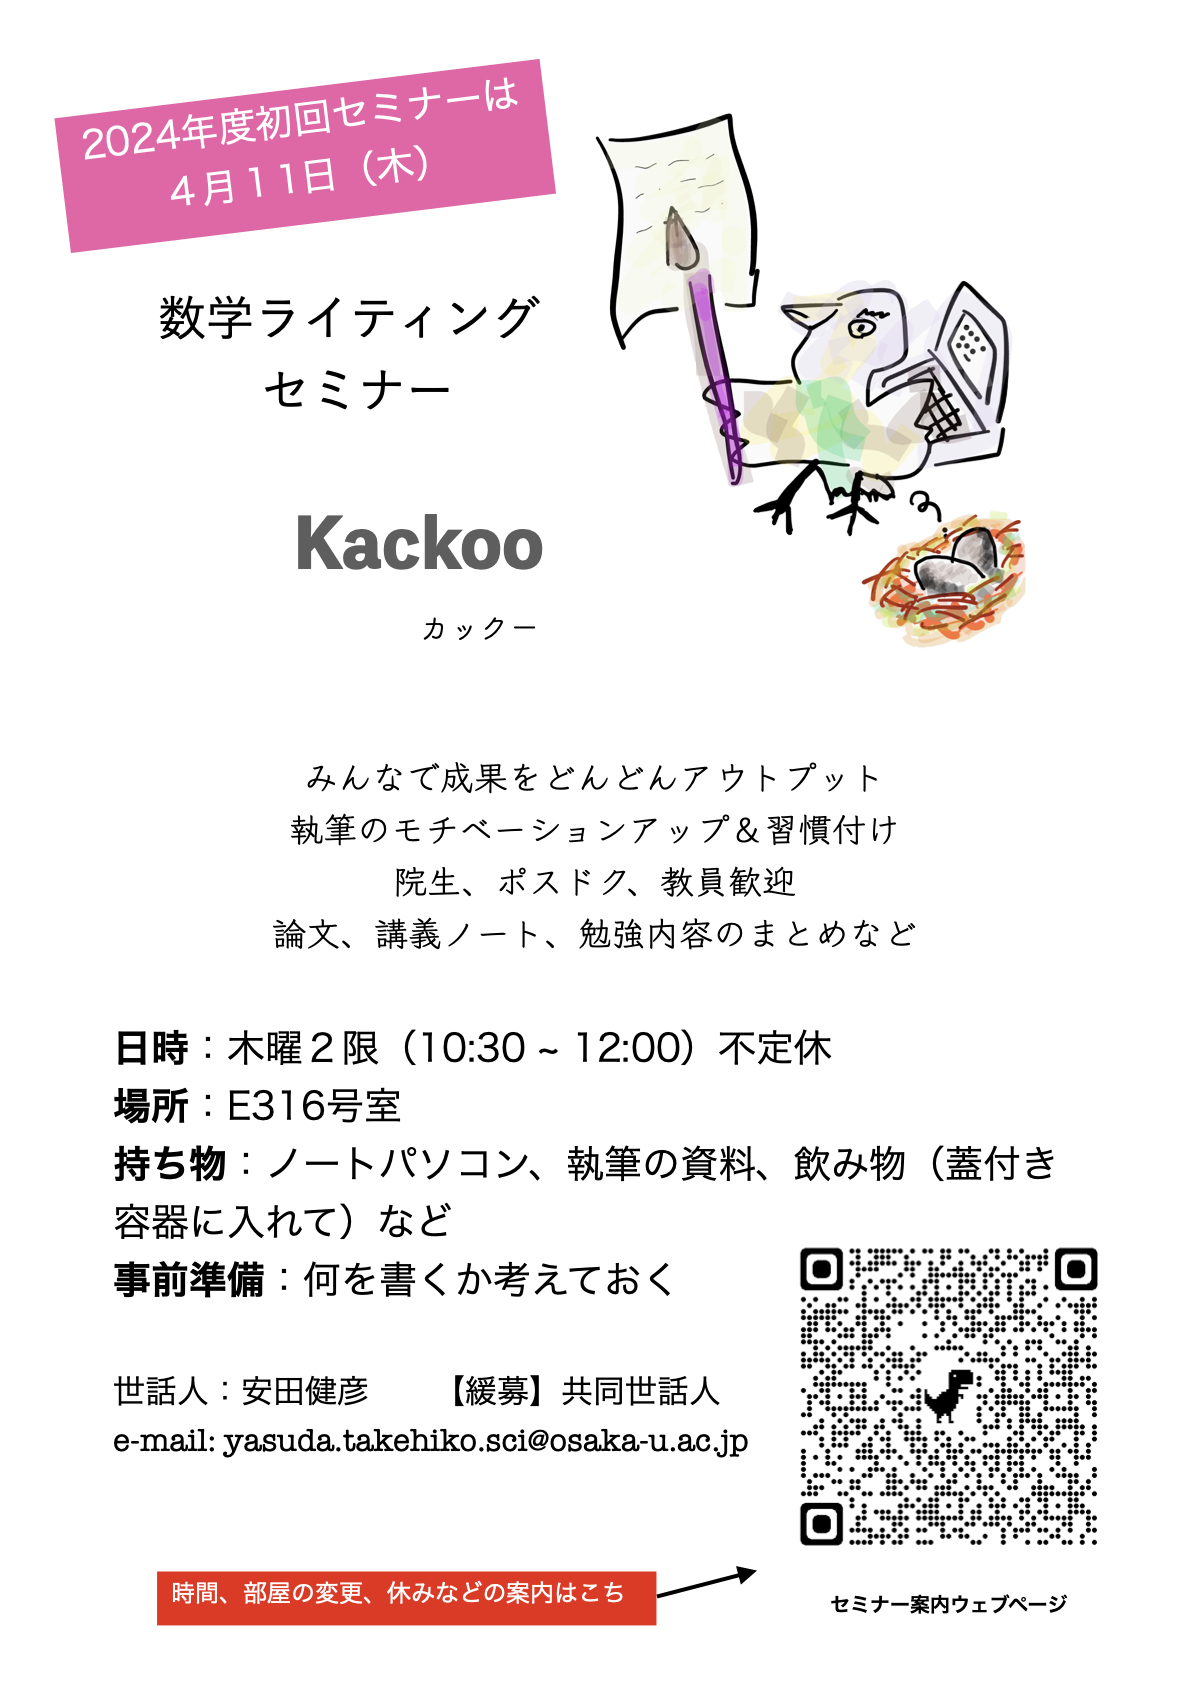 Kackoo Poster